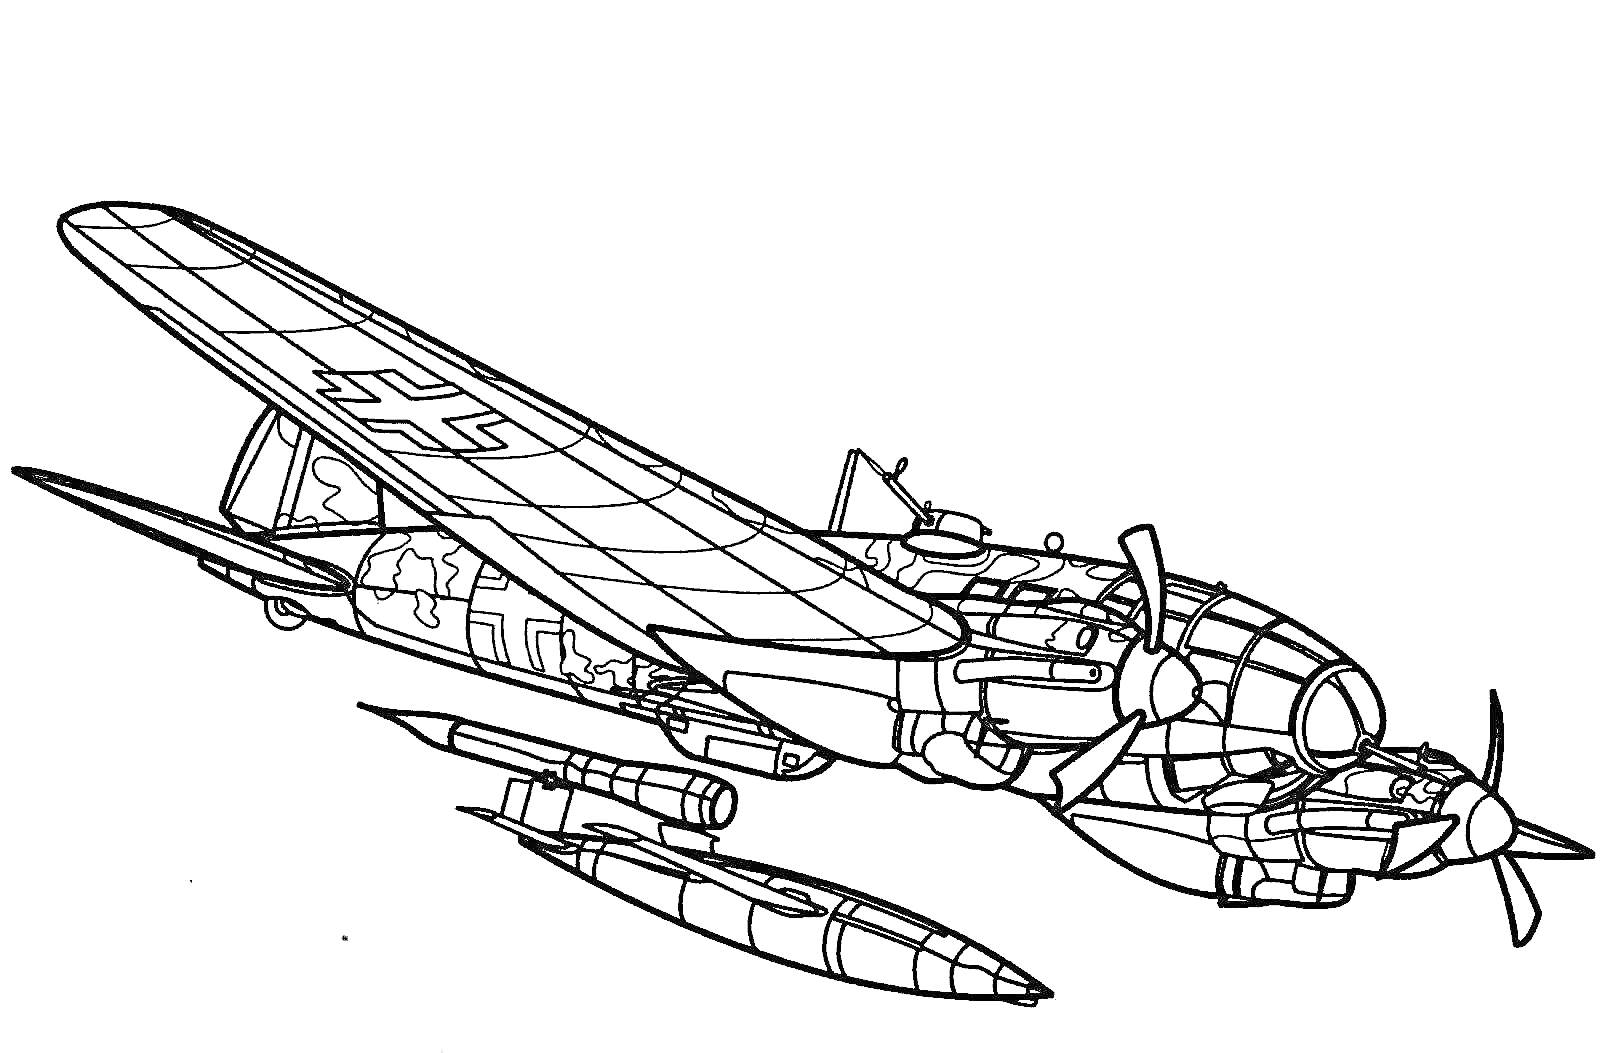 Раскраска Военный самолет с двумя пропеллерами и подфюзеляжным оборудованием